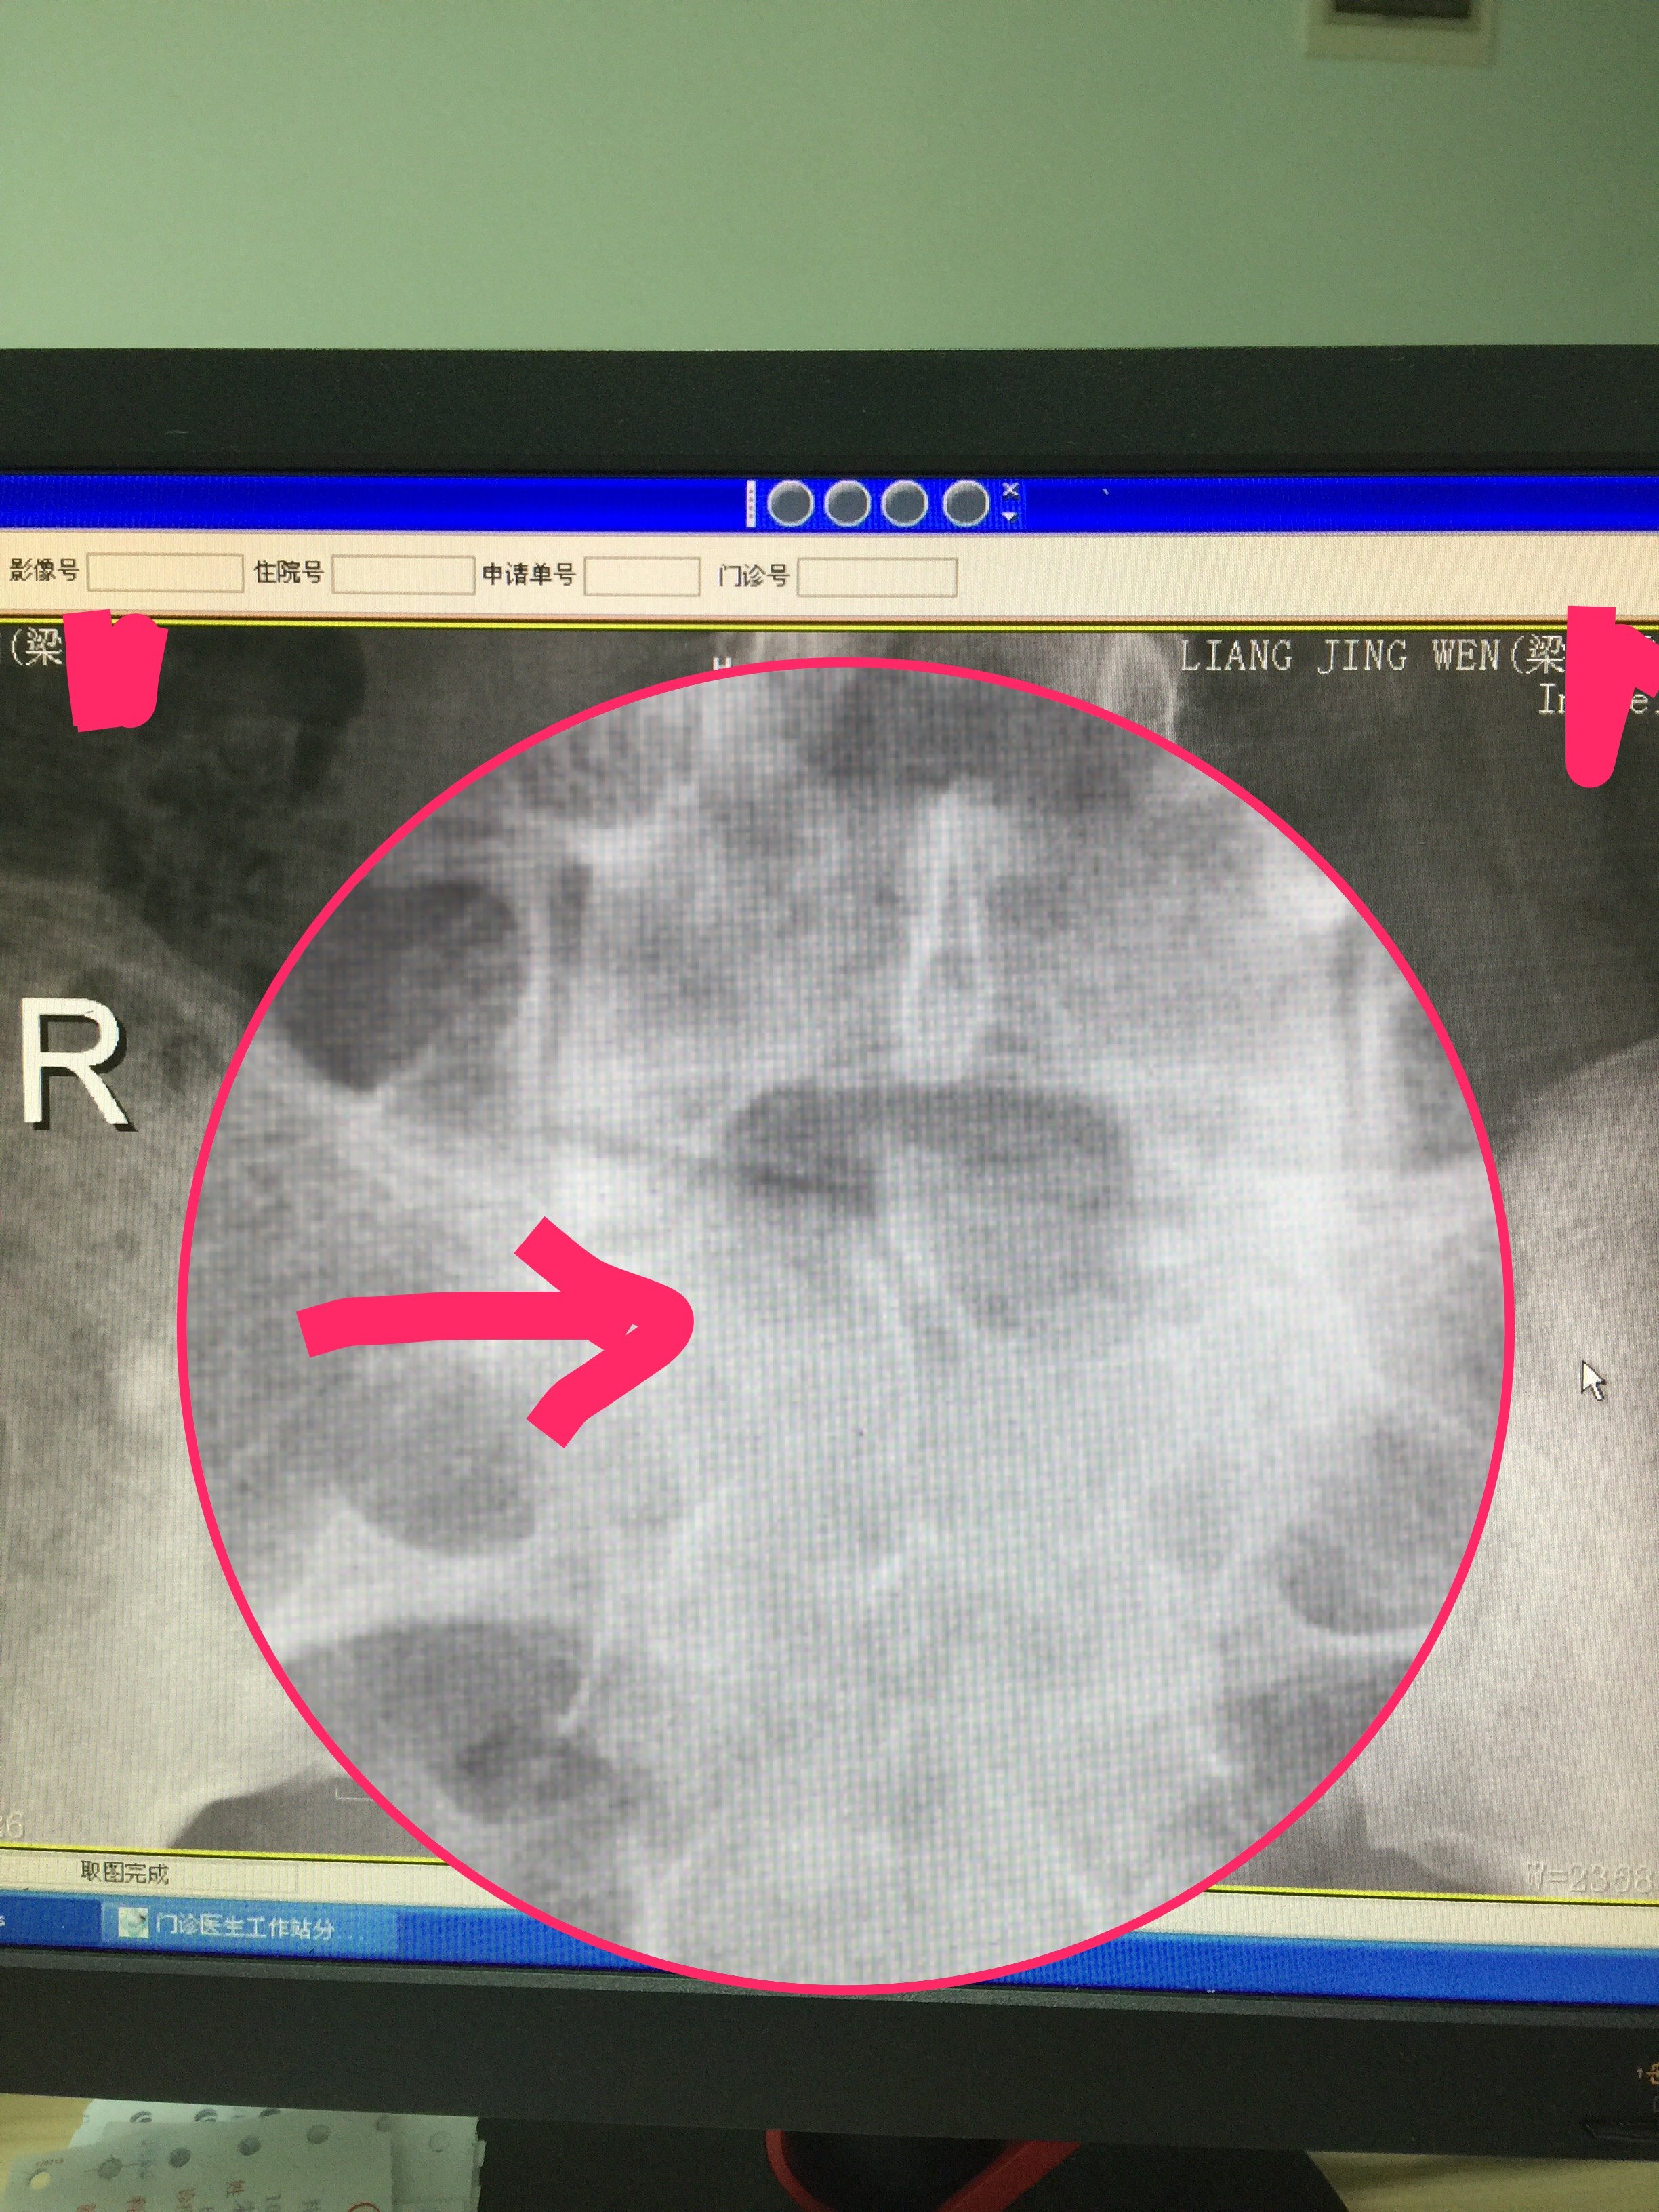 箭头指向的是骶骨隐裂,正常的应该有棘突果然,l5/s1椎间盘突出通过